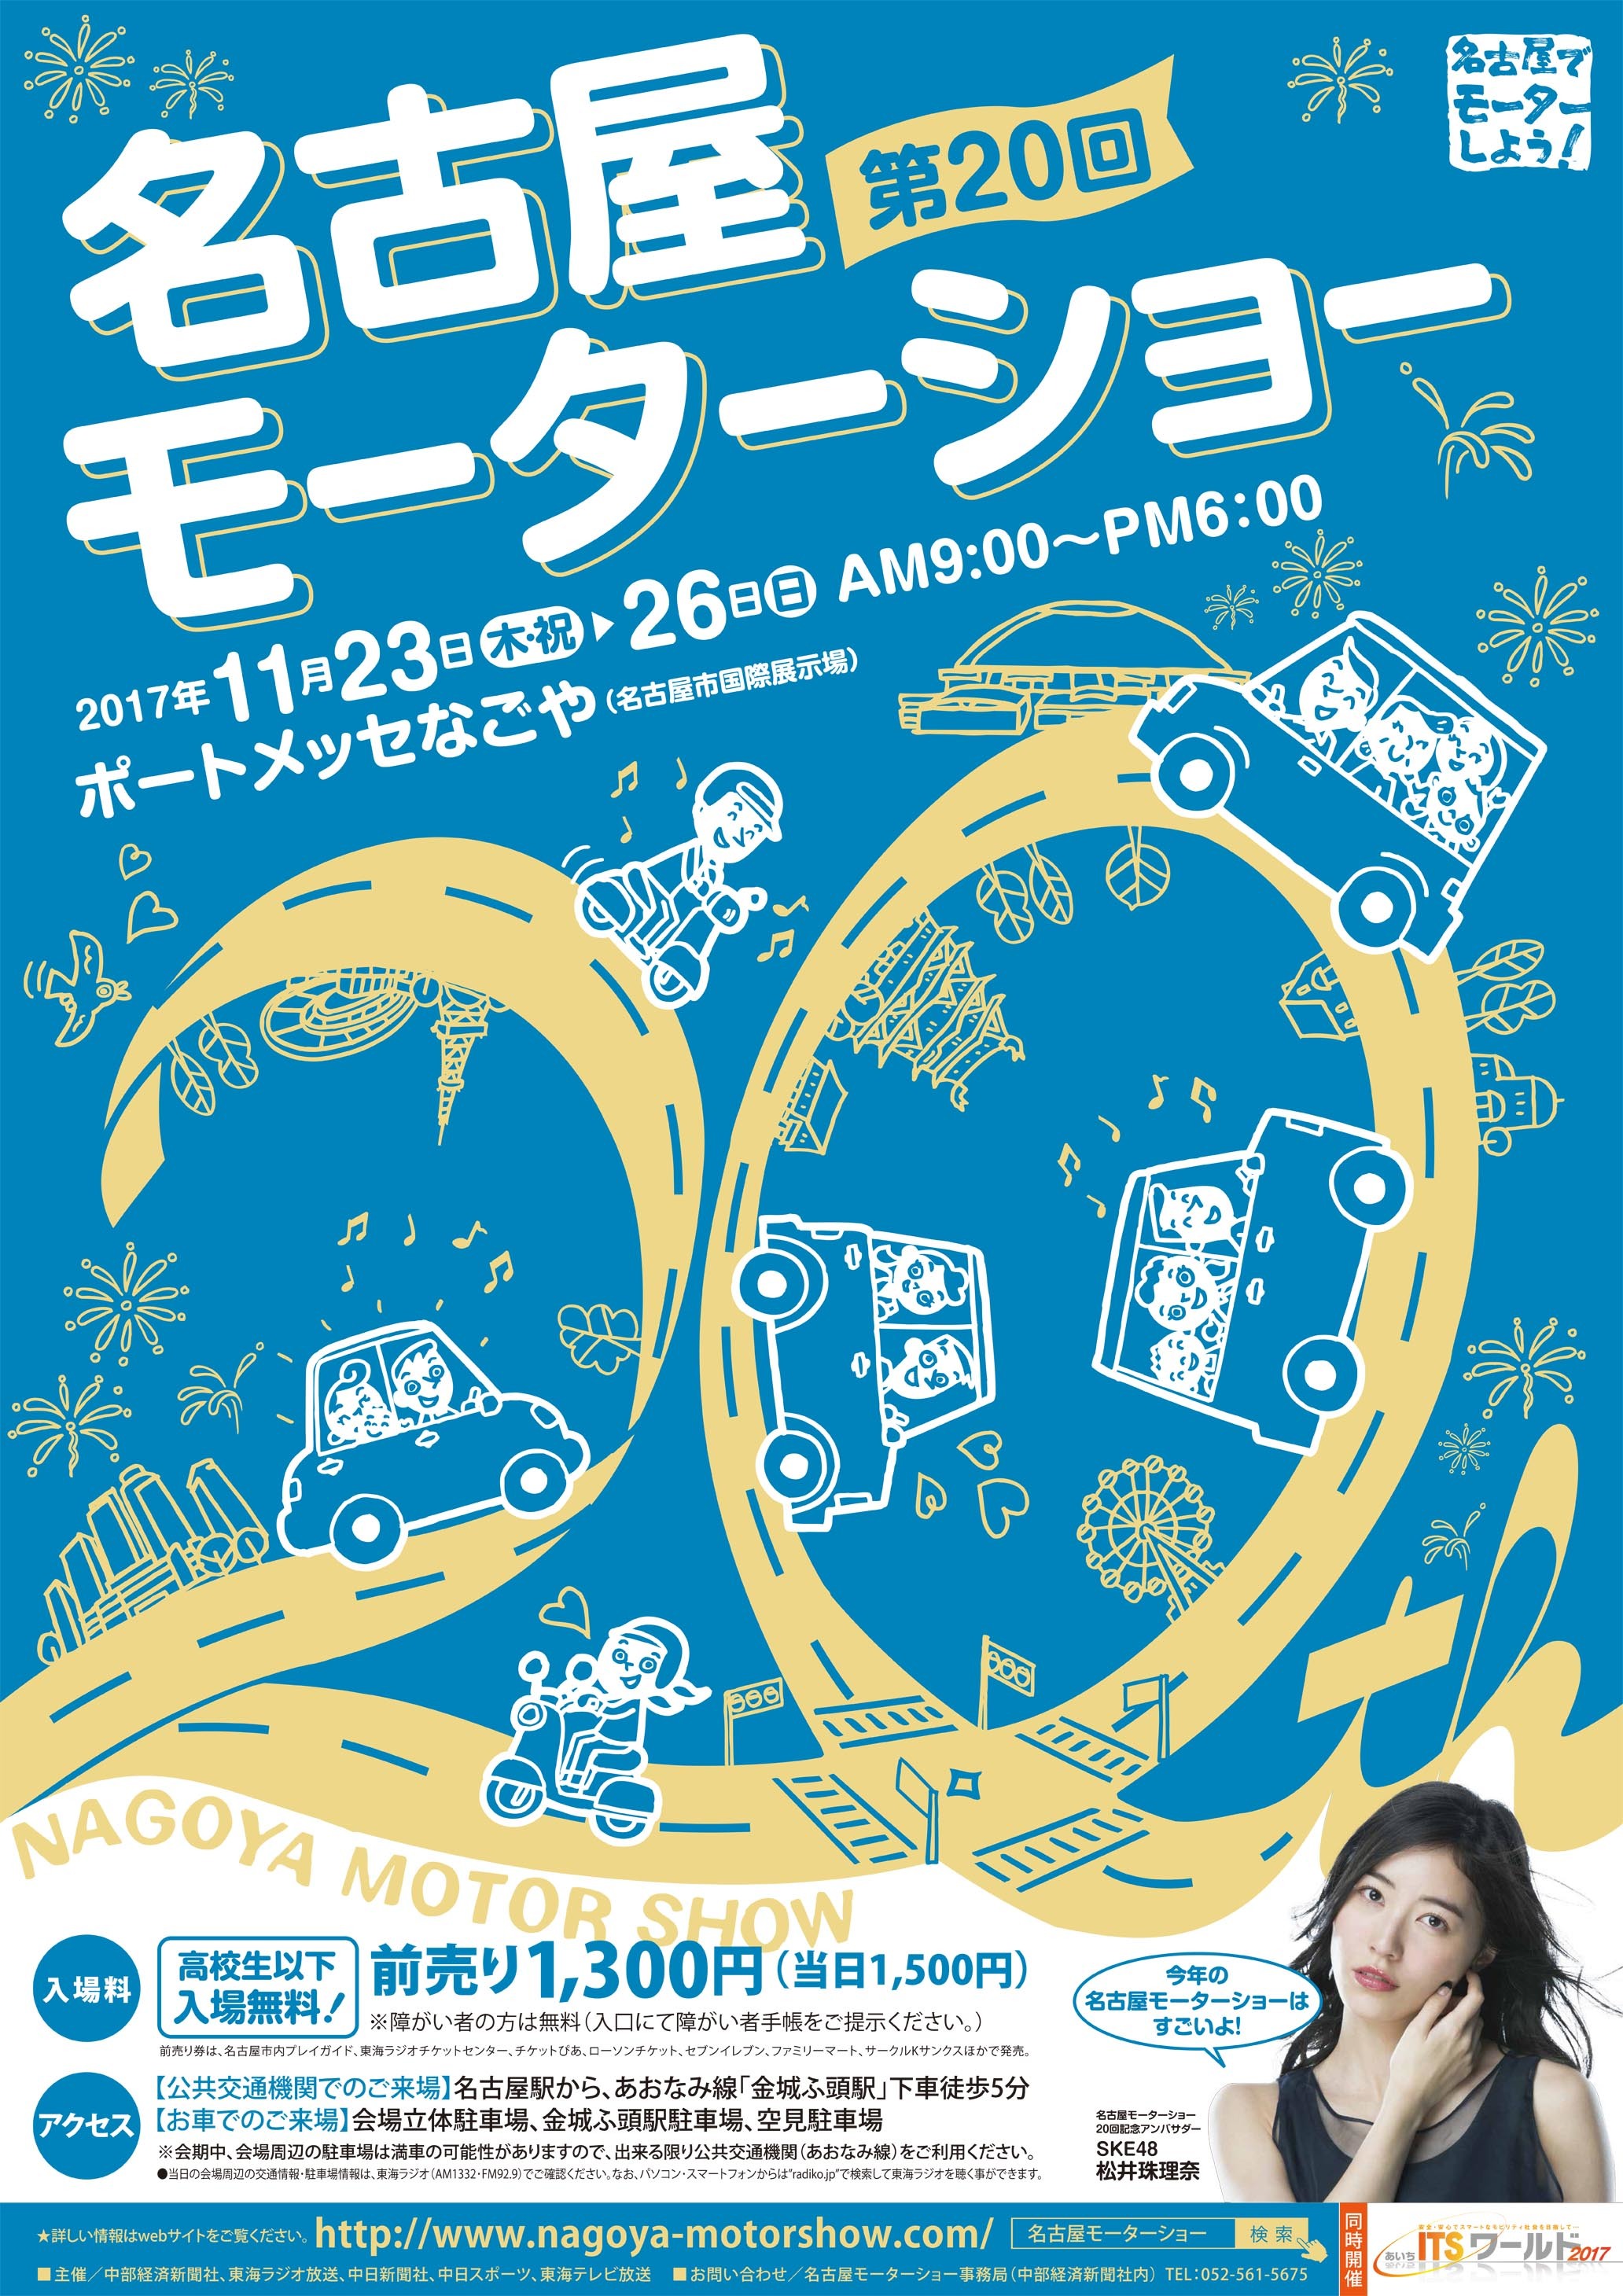 名古屋モーターショーのポスター。文字が道になっており、活気あふれる名古屋の街をイメージしたデザインだ